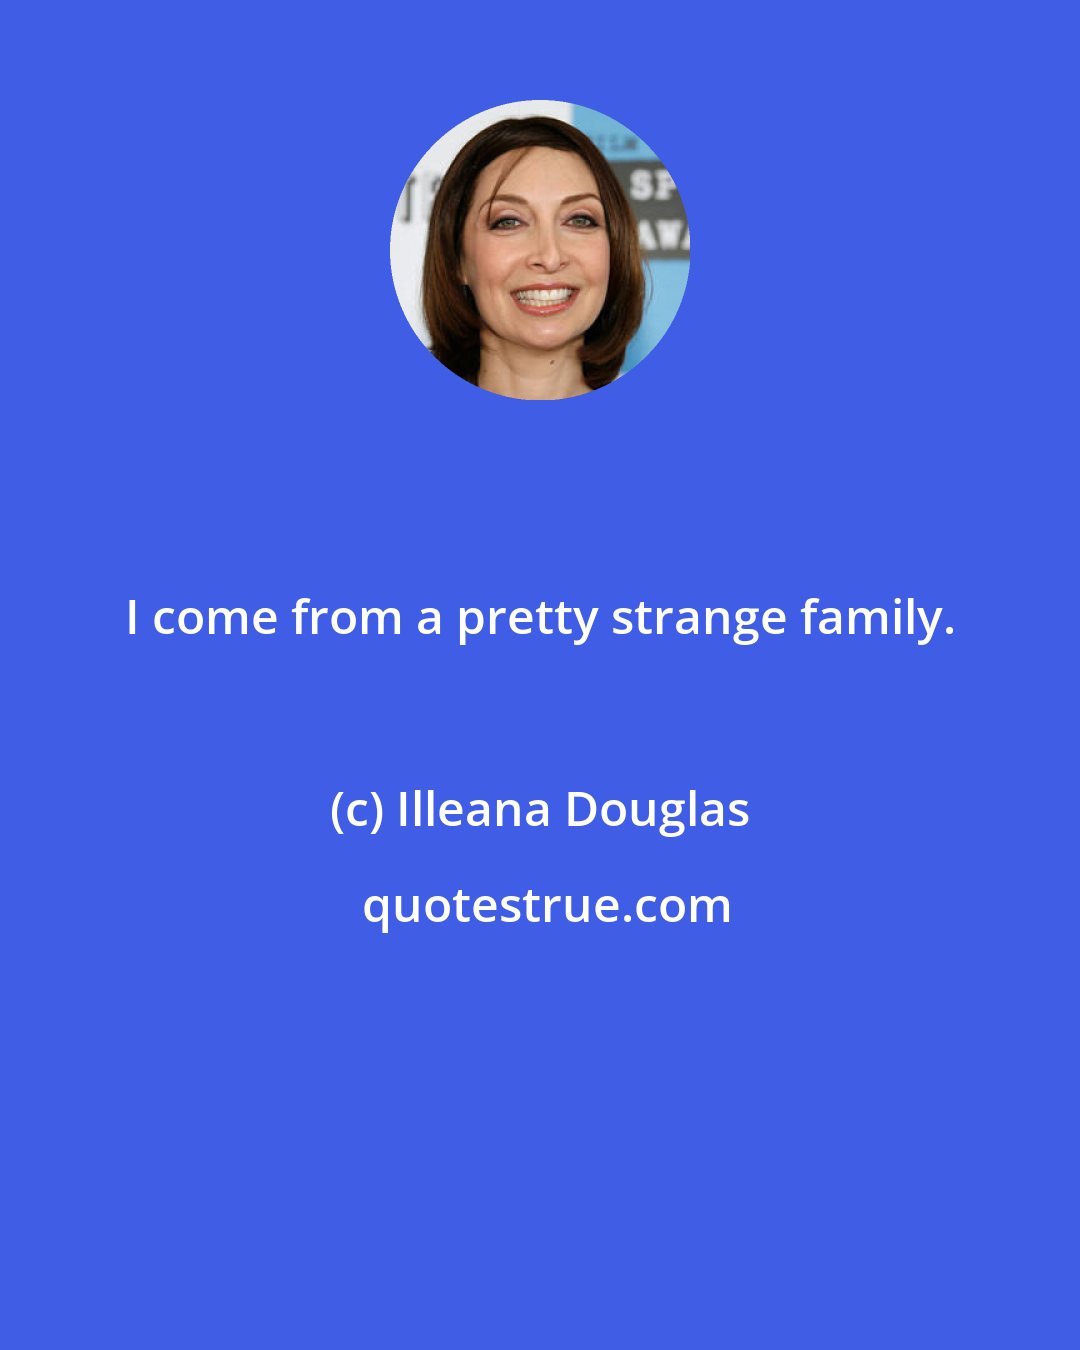 Illeana Douglas: I come from a pretty strange family.